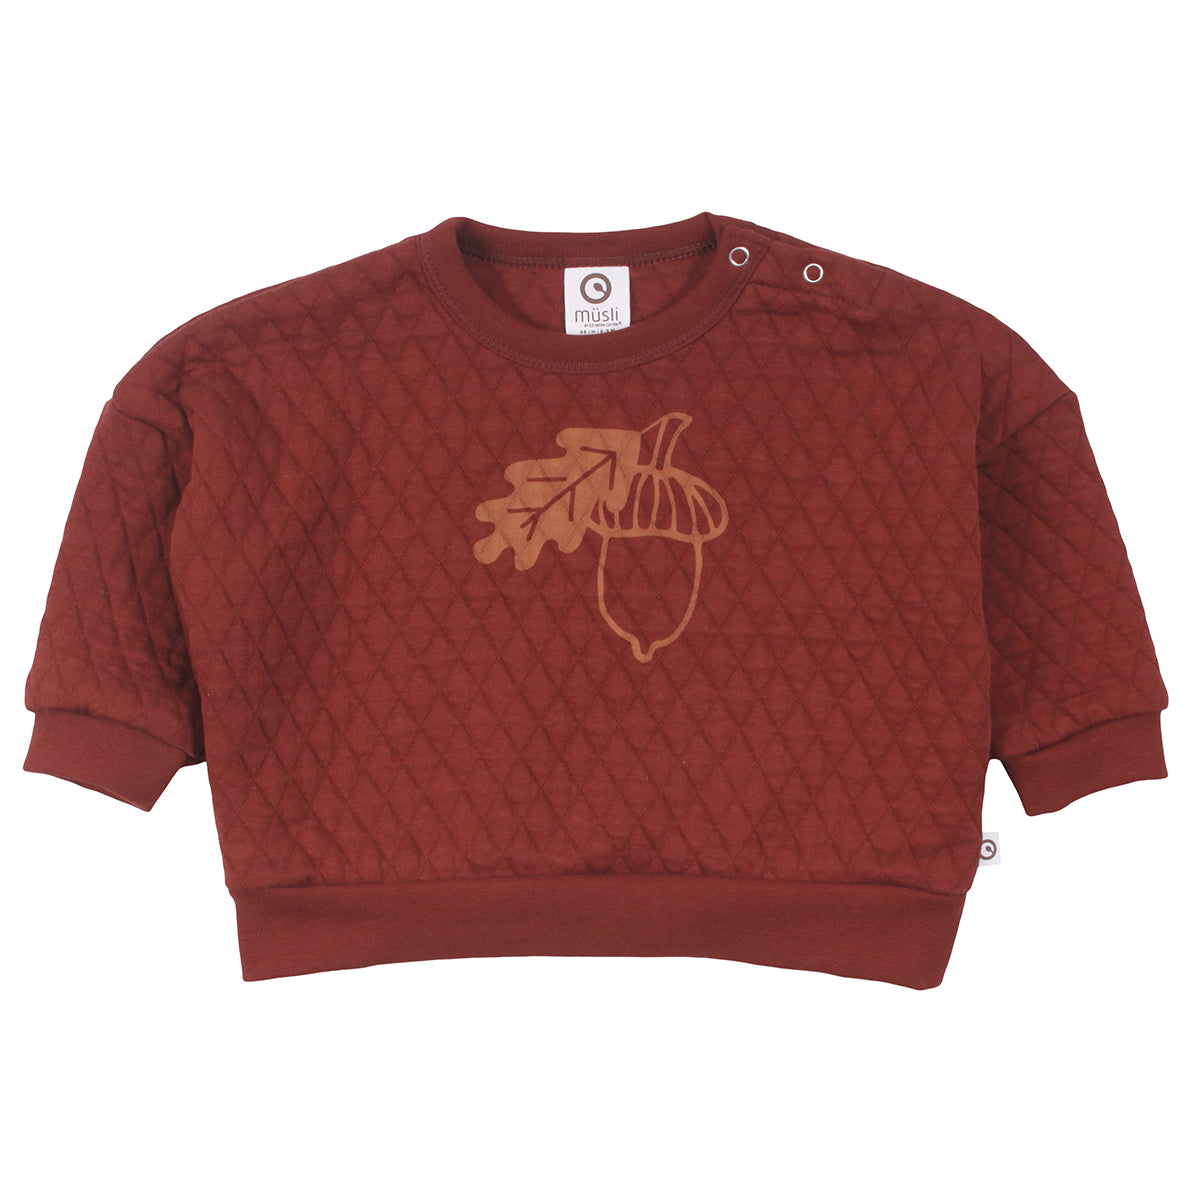 Acorn quilt sweatshirt front